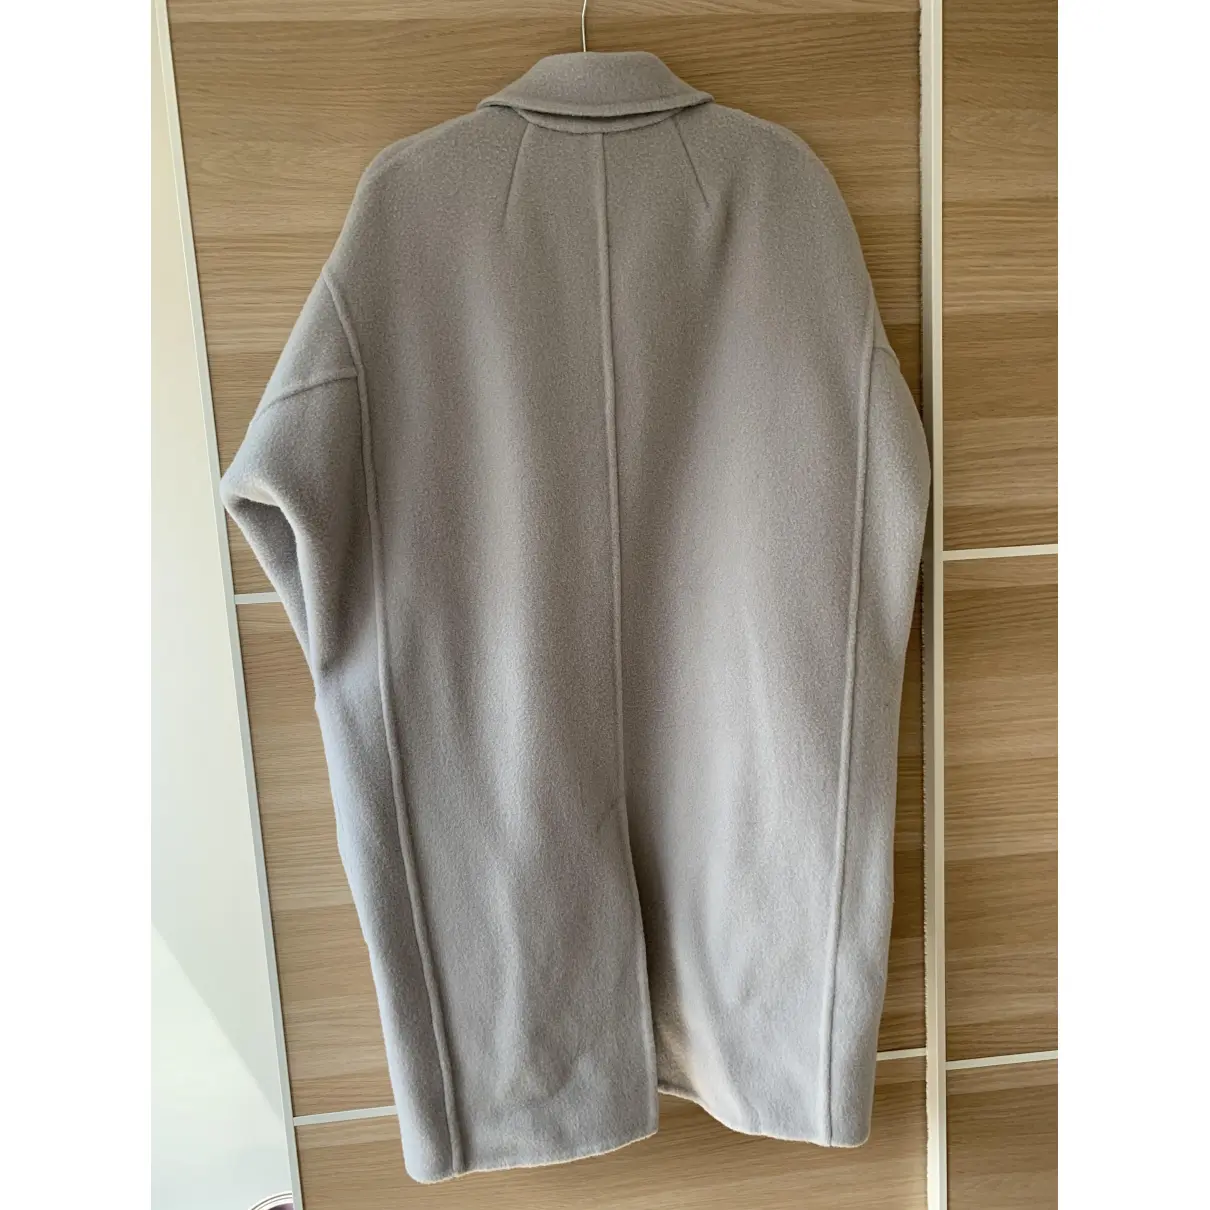 Buy 3.1 Phillip Lim Wool coat online